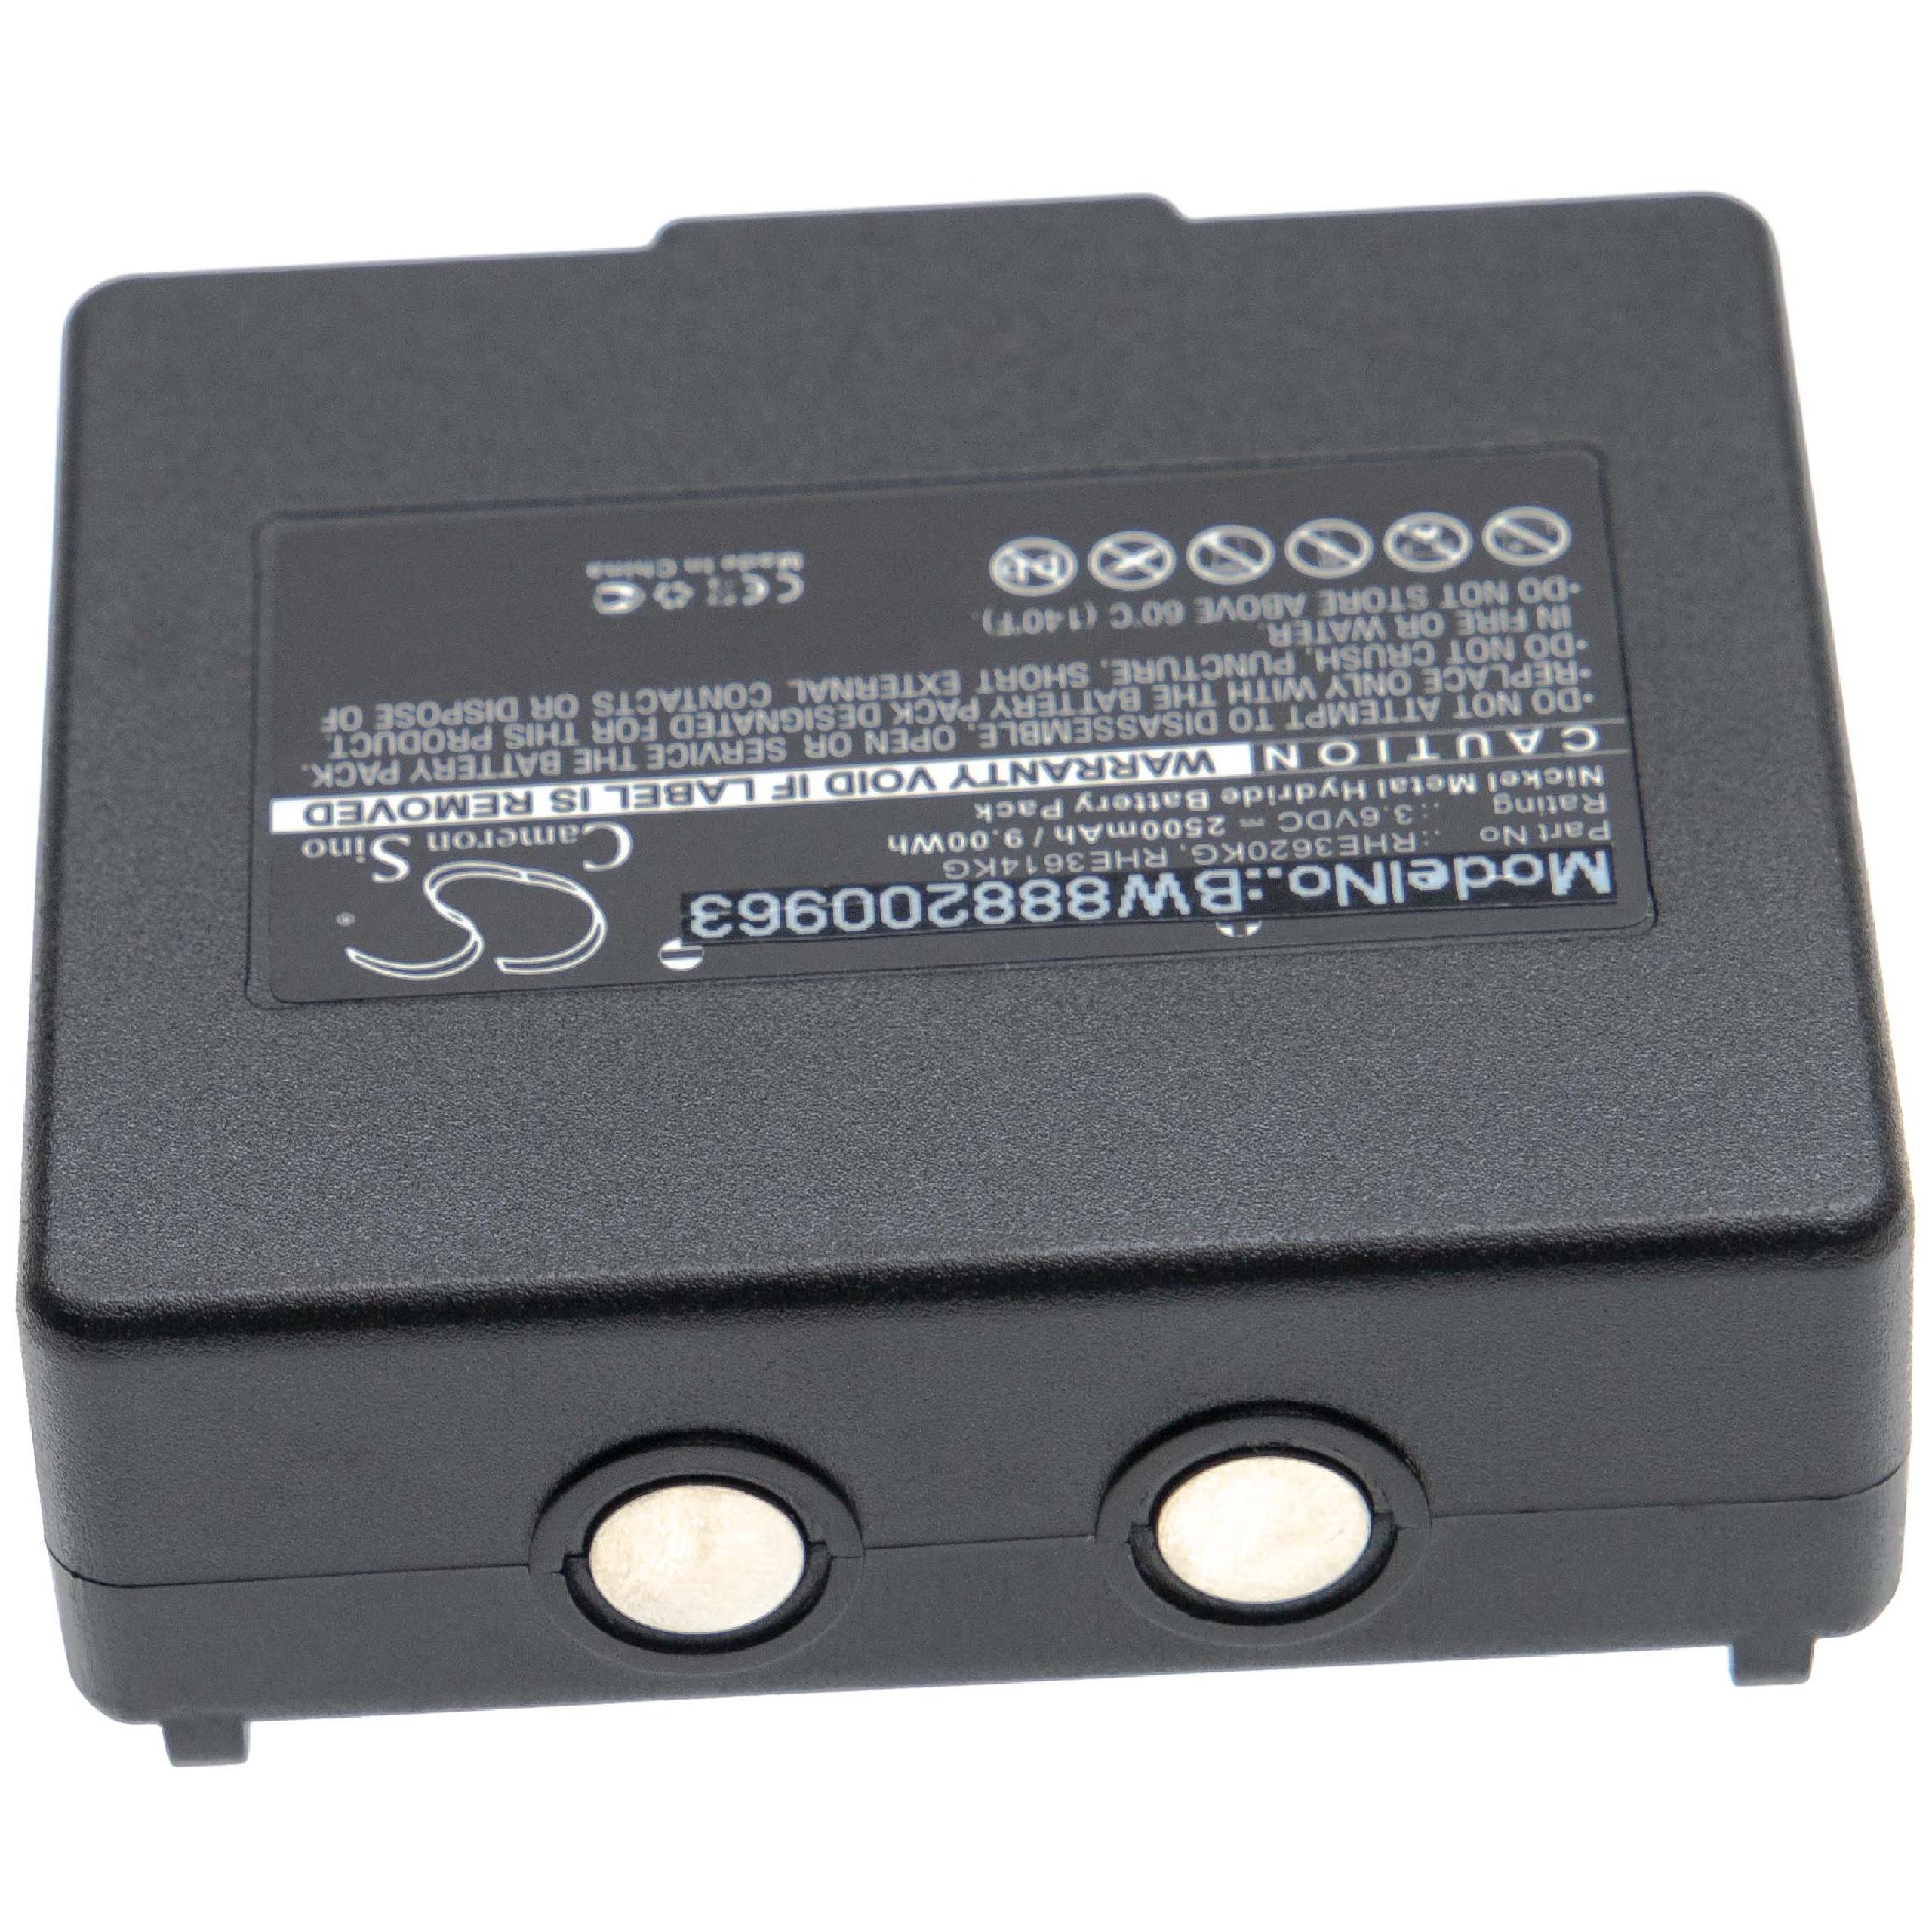 Batterie remplace Abitron KH68300990, EX2-22 pour télécomande industrielle - 2500mAh 3,6V NiMH